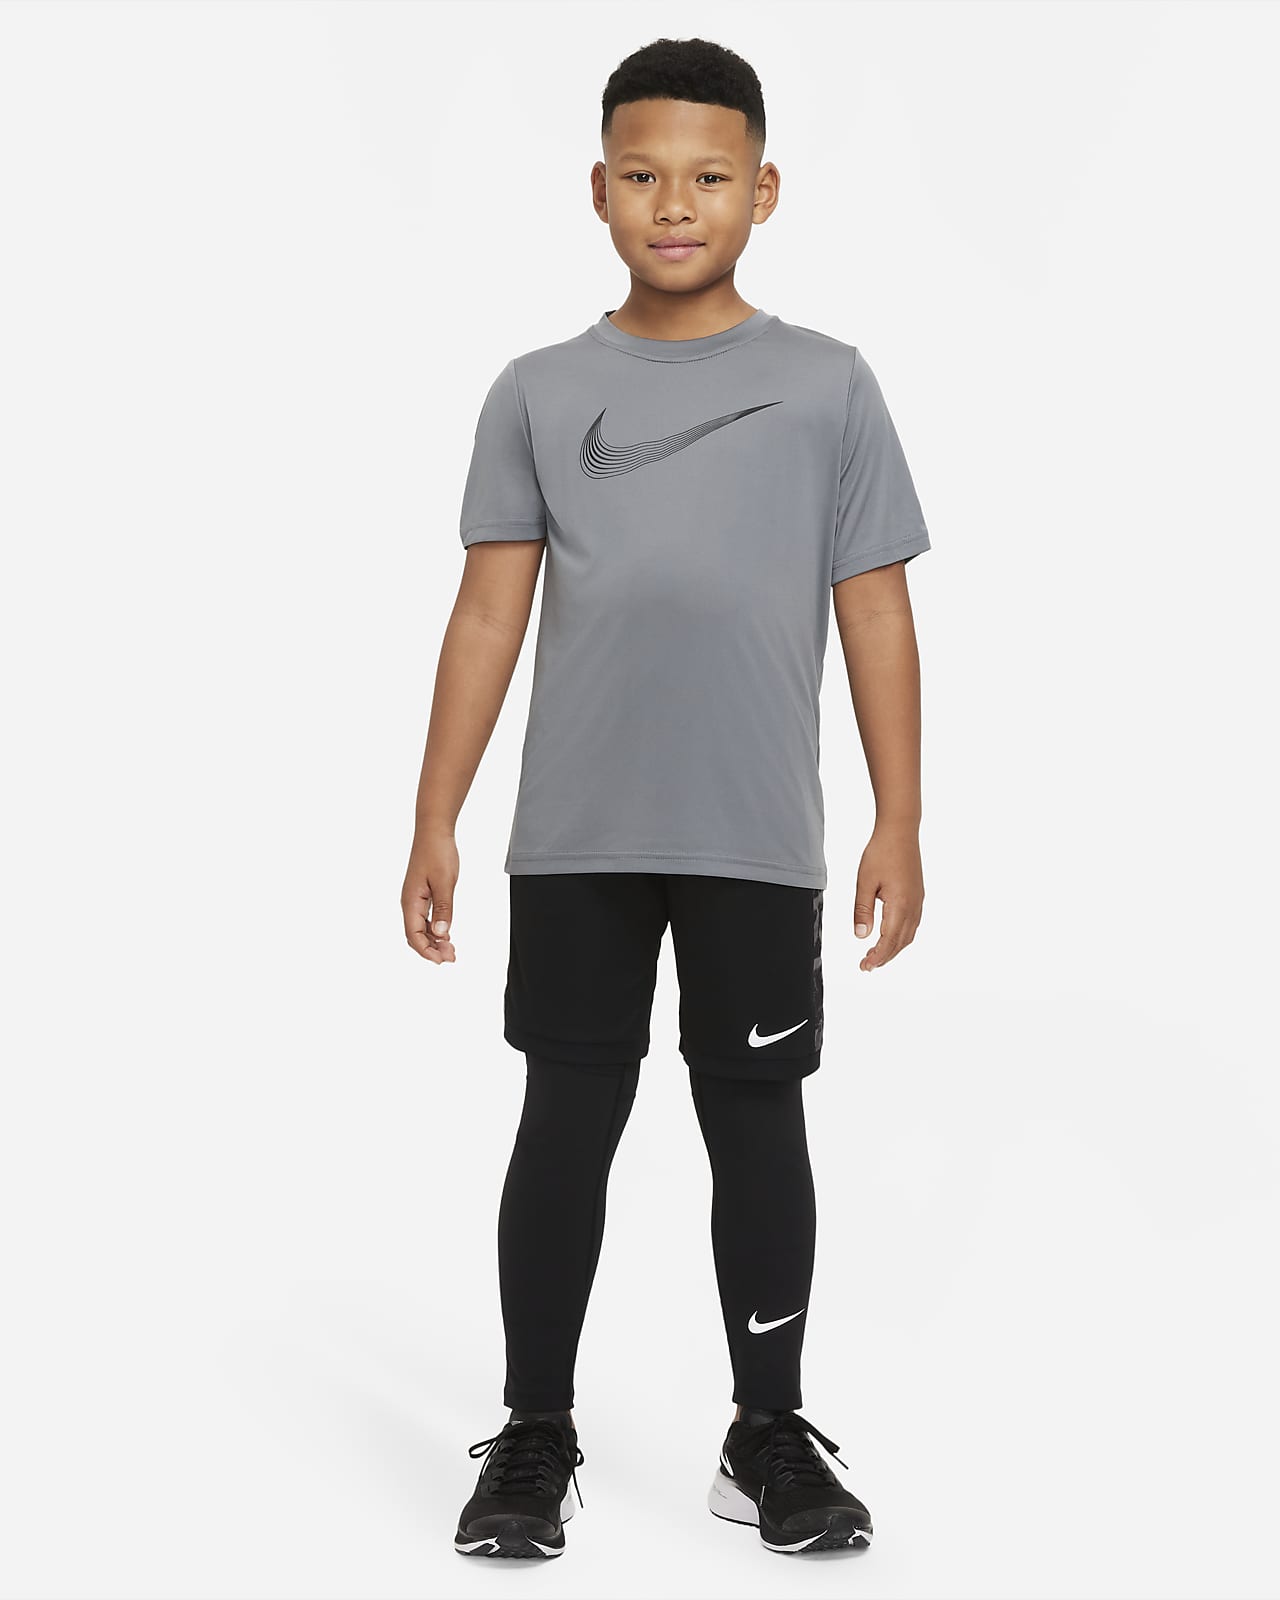 Caius Onschuldig titel Nike Pro Dri-FIT Big Kids' (Boys') Tights. Nike JP